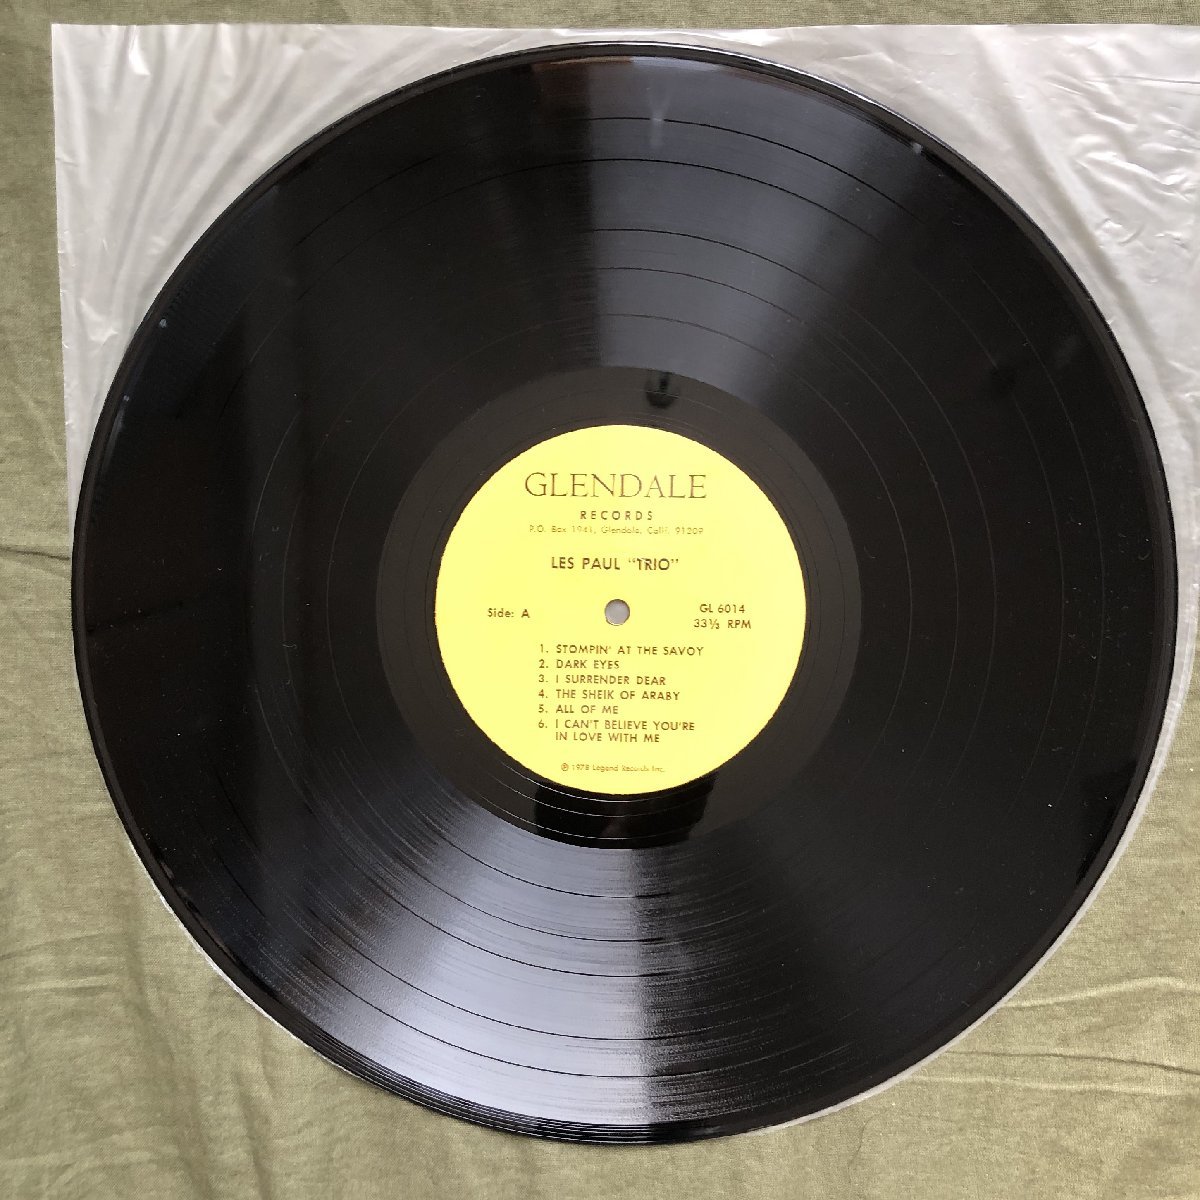 傷なし美盤 良ジャケ レア盤 1978年 米国 本国オリジナルリリース盤 LPレコード ザ・レス・ポール・トリオ The Les Paul Trio: Gibson_画像8